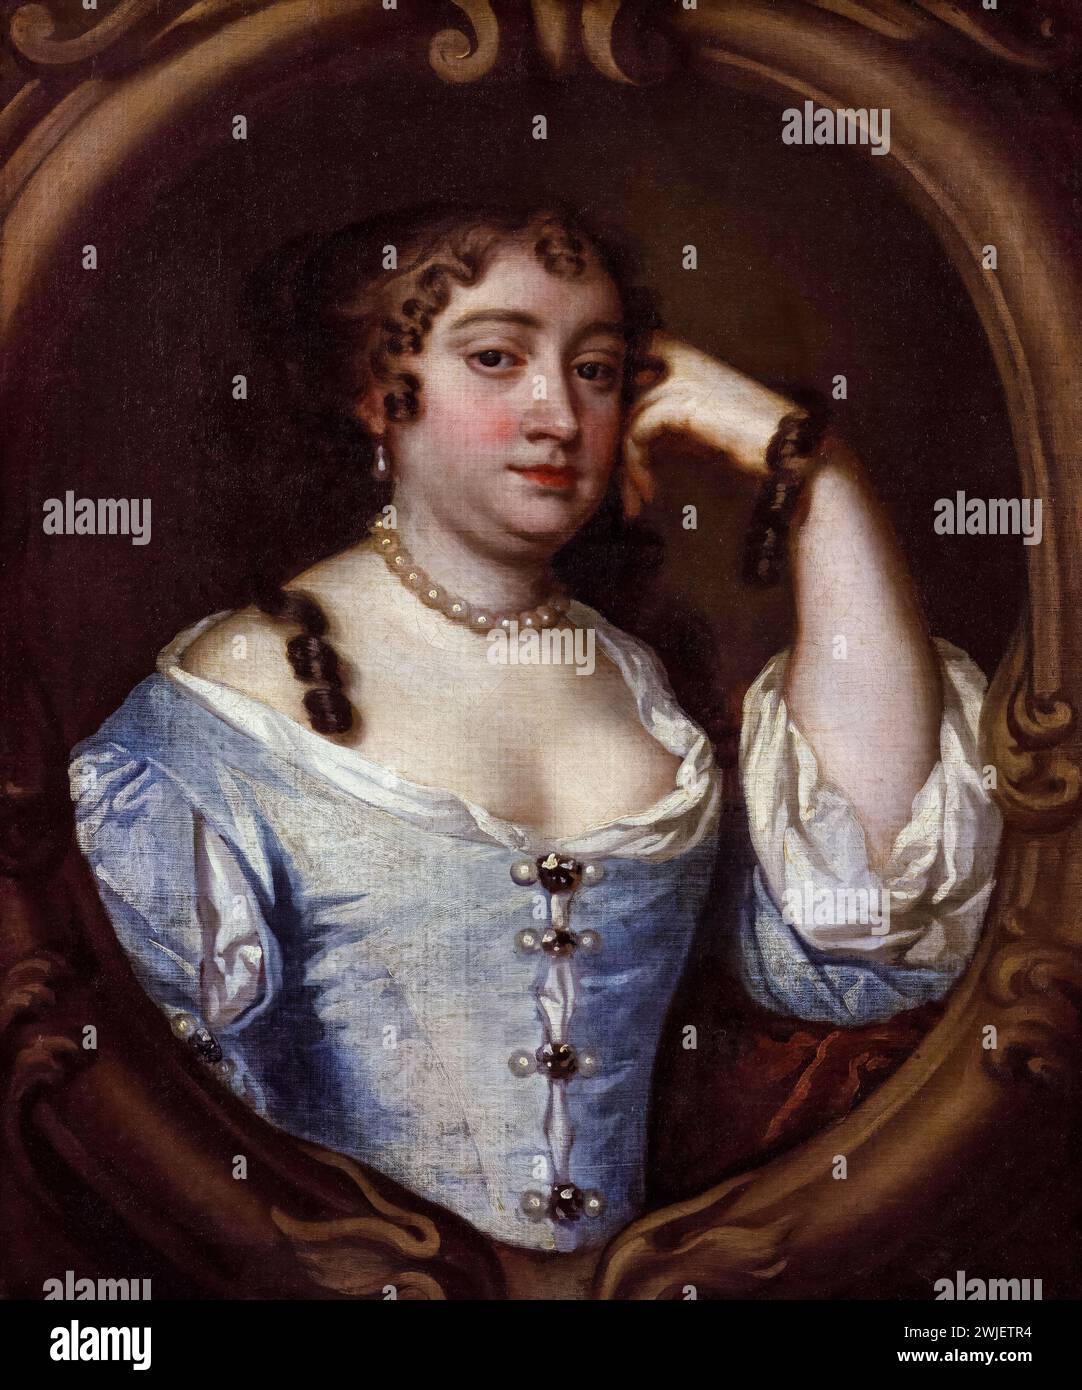 Anne Hyde (1637-1671), duchesse d'York. Première épouse du roi Jacques II et VII, portrait peint à l'huile sur toile d'après Sir Peter Lely, vers 1670 Banque D'Images